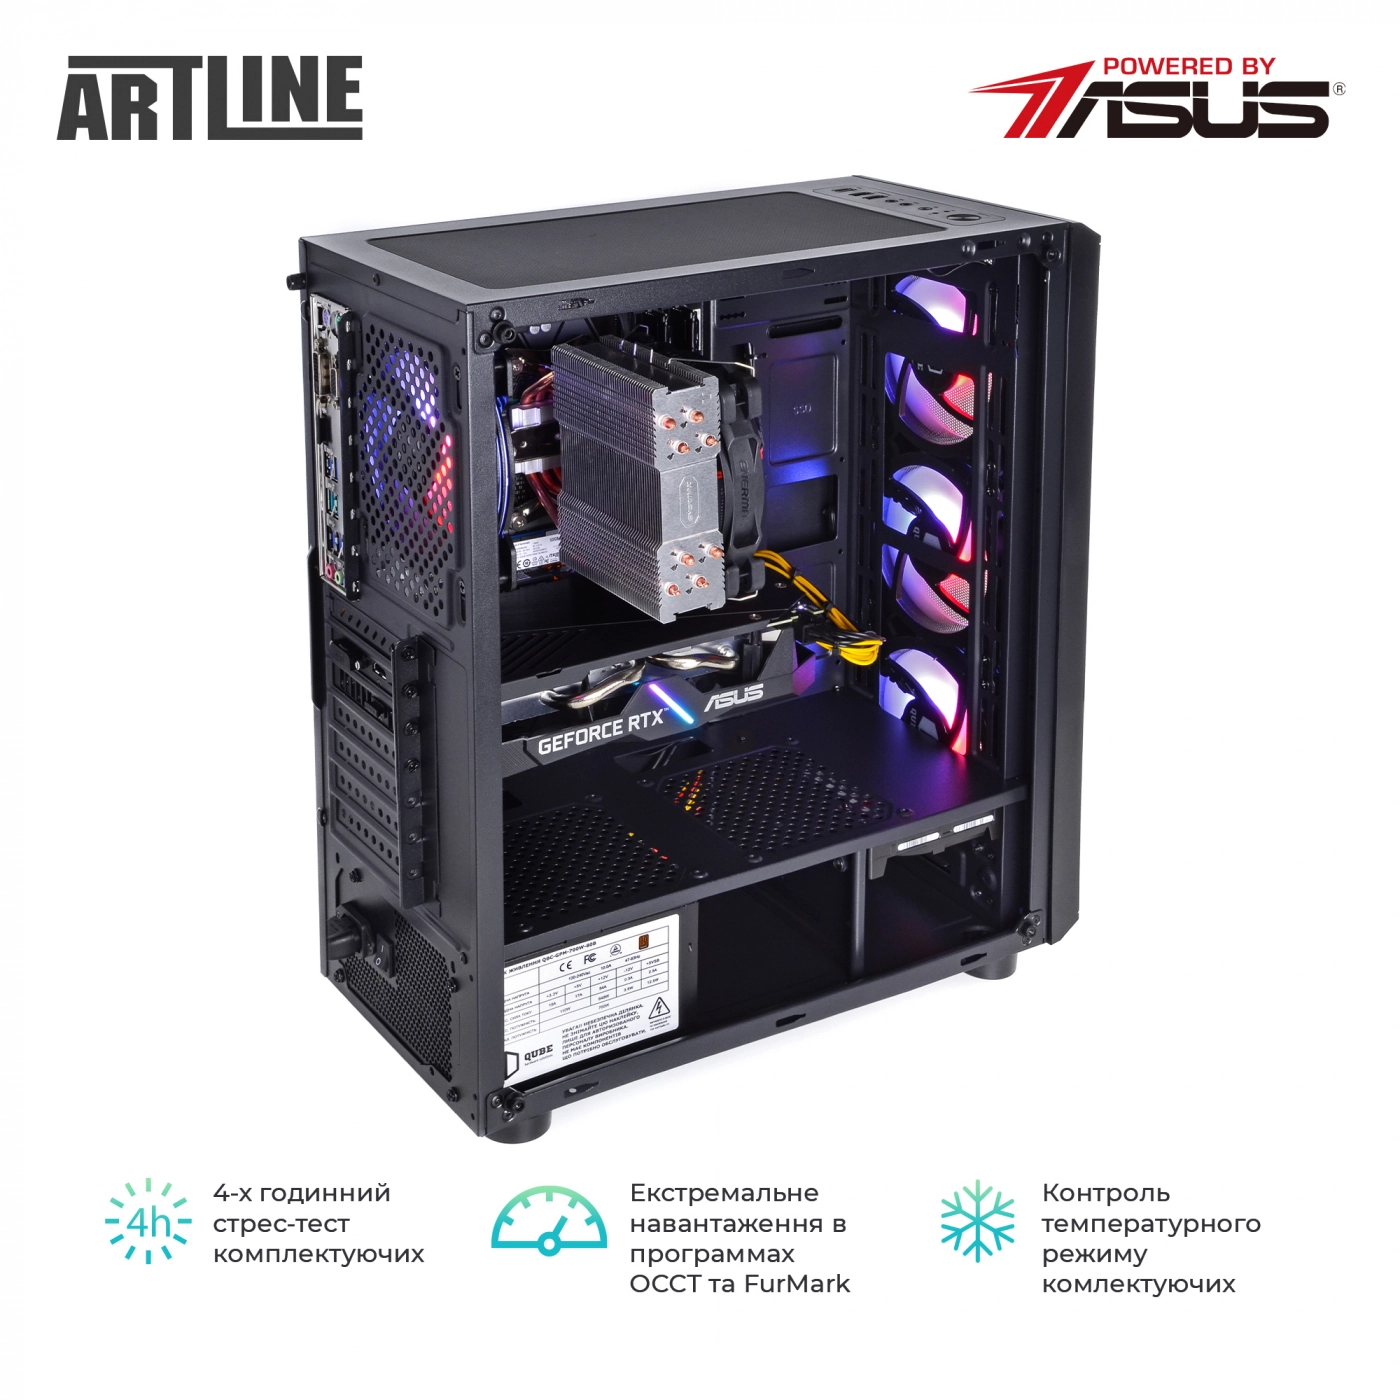 Купить Компьютер ARTLINE Gaming X85v20 - фото 9